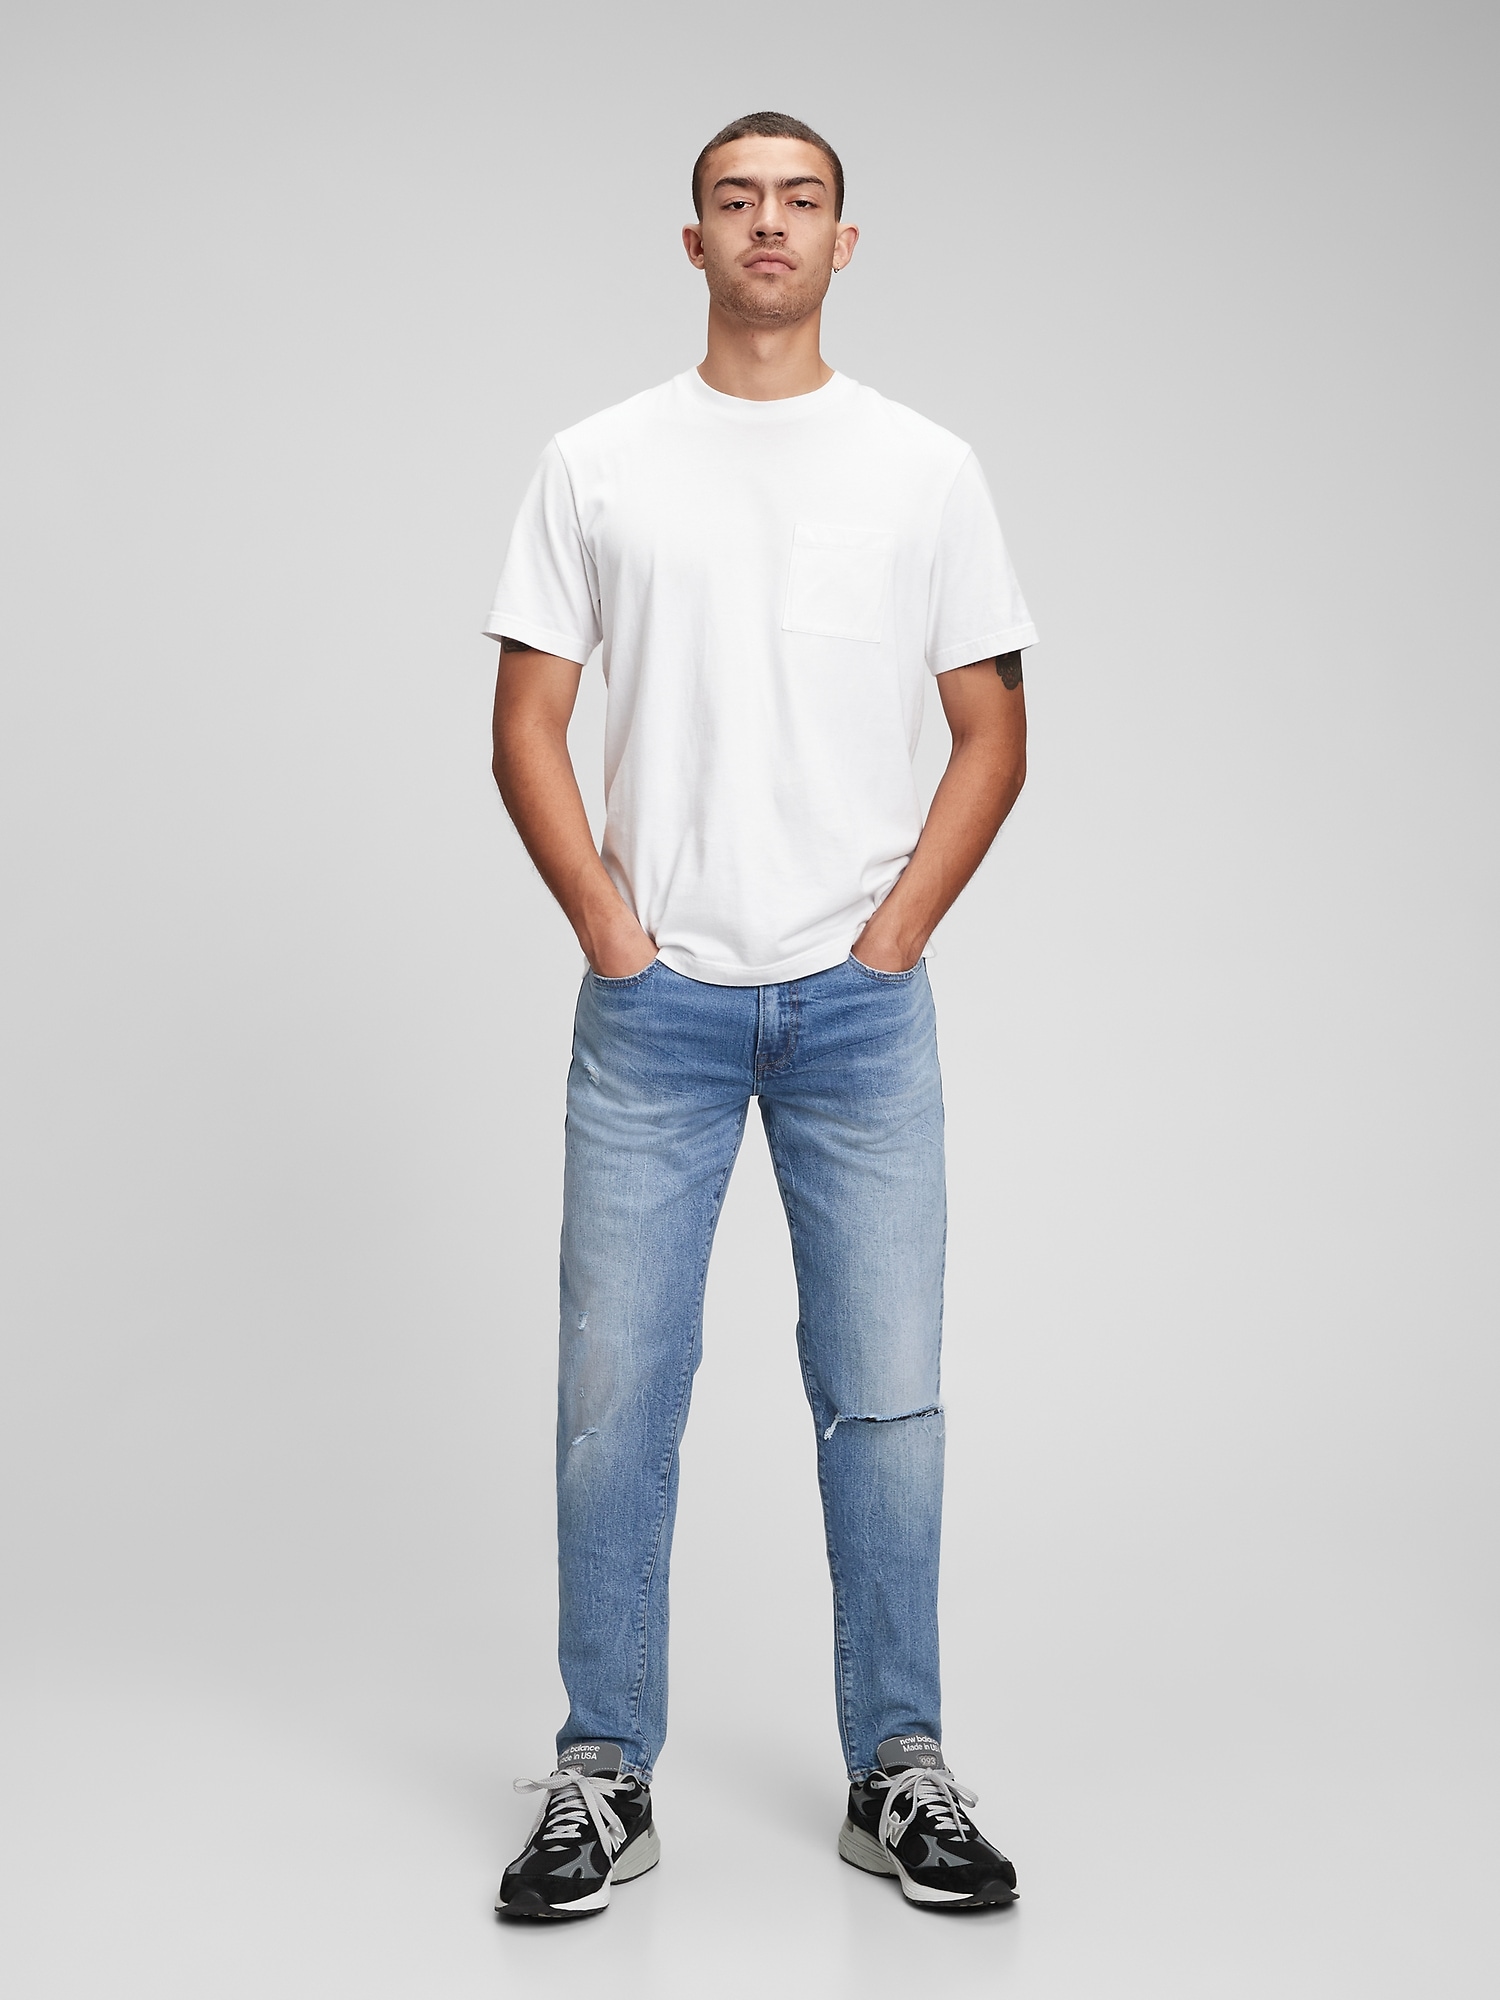 Ellendig spiegel Eigenlijk Slim Jeans in GapFlex with Washwell | Gap